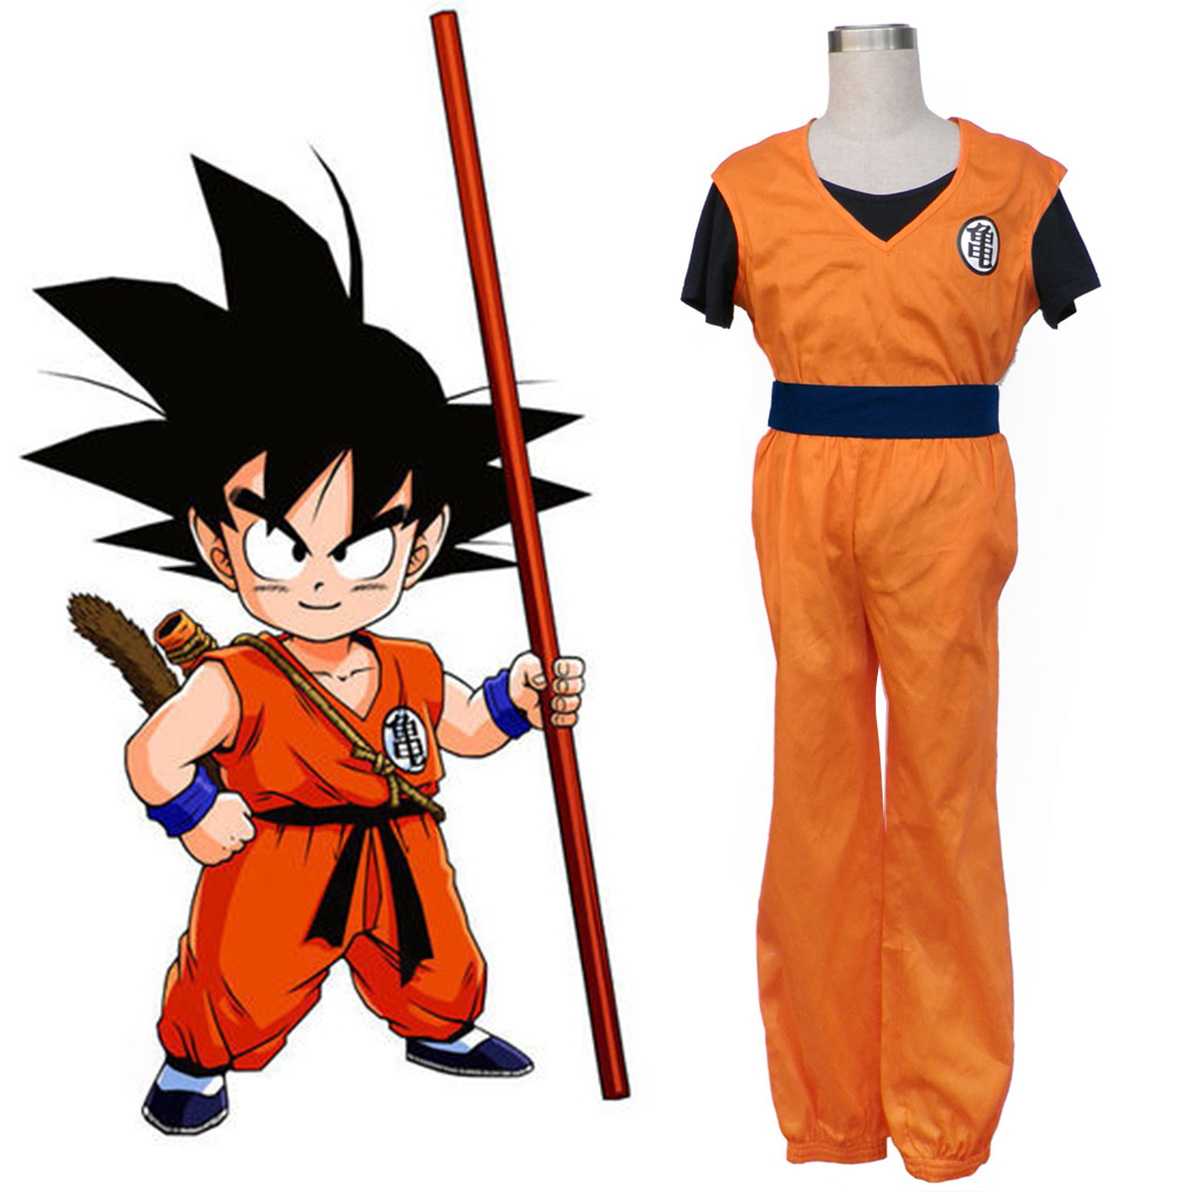 Disfraces Dragon Ball Son Goku 1 Cosplay España Tiendas